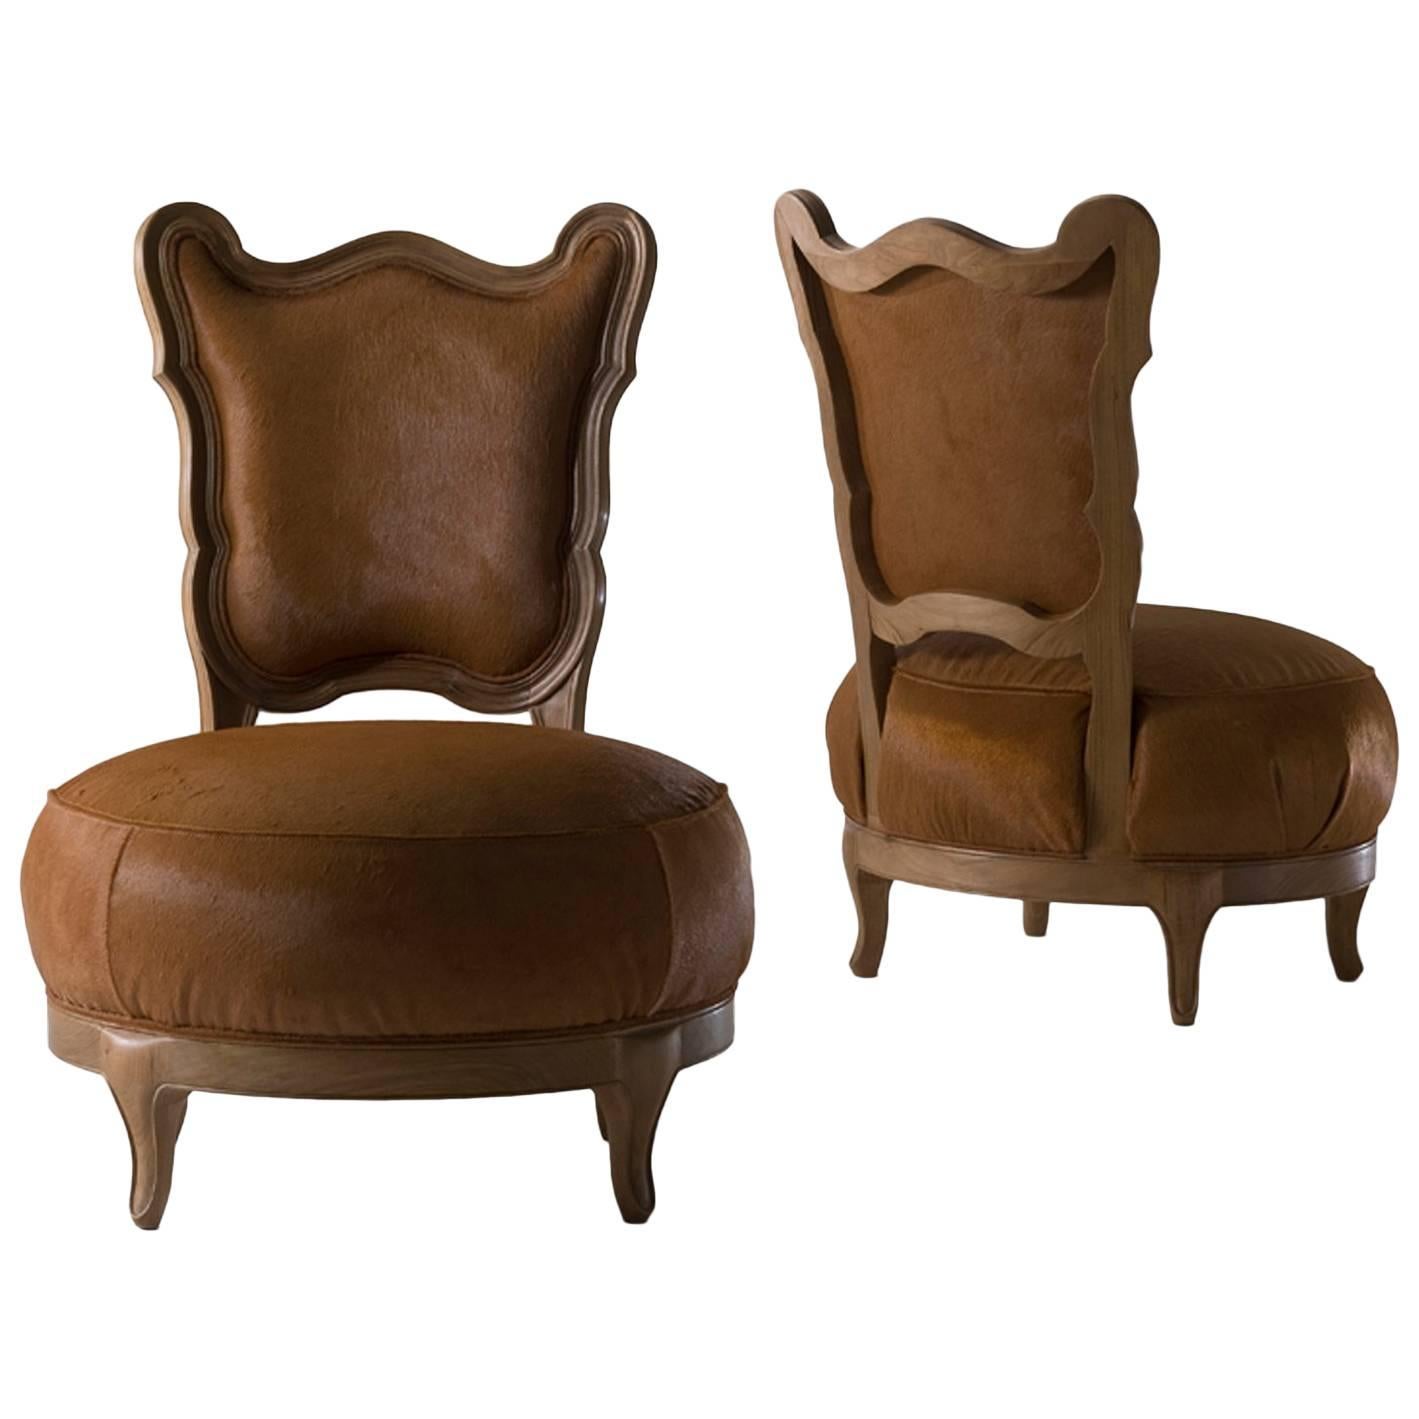 Gattone - solid walnut armchair, designed by Nigel Coates